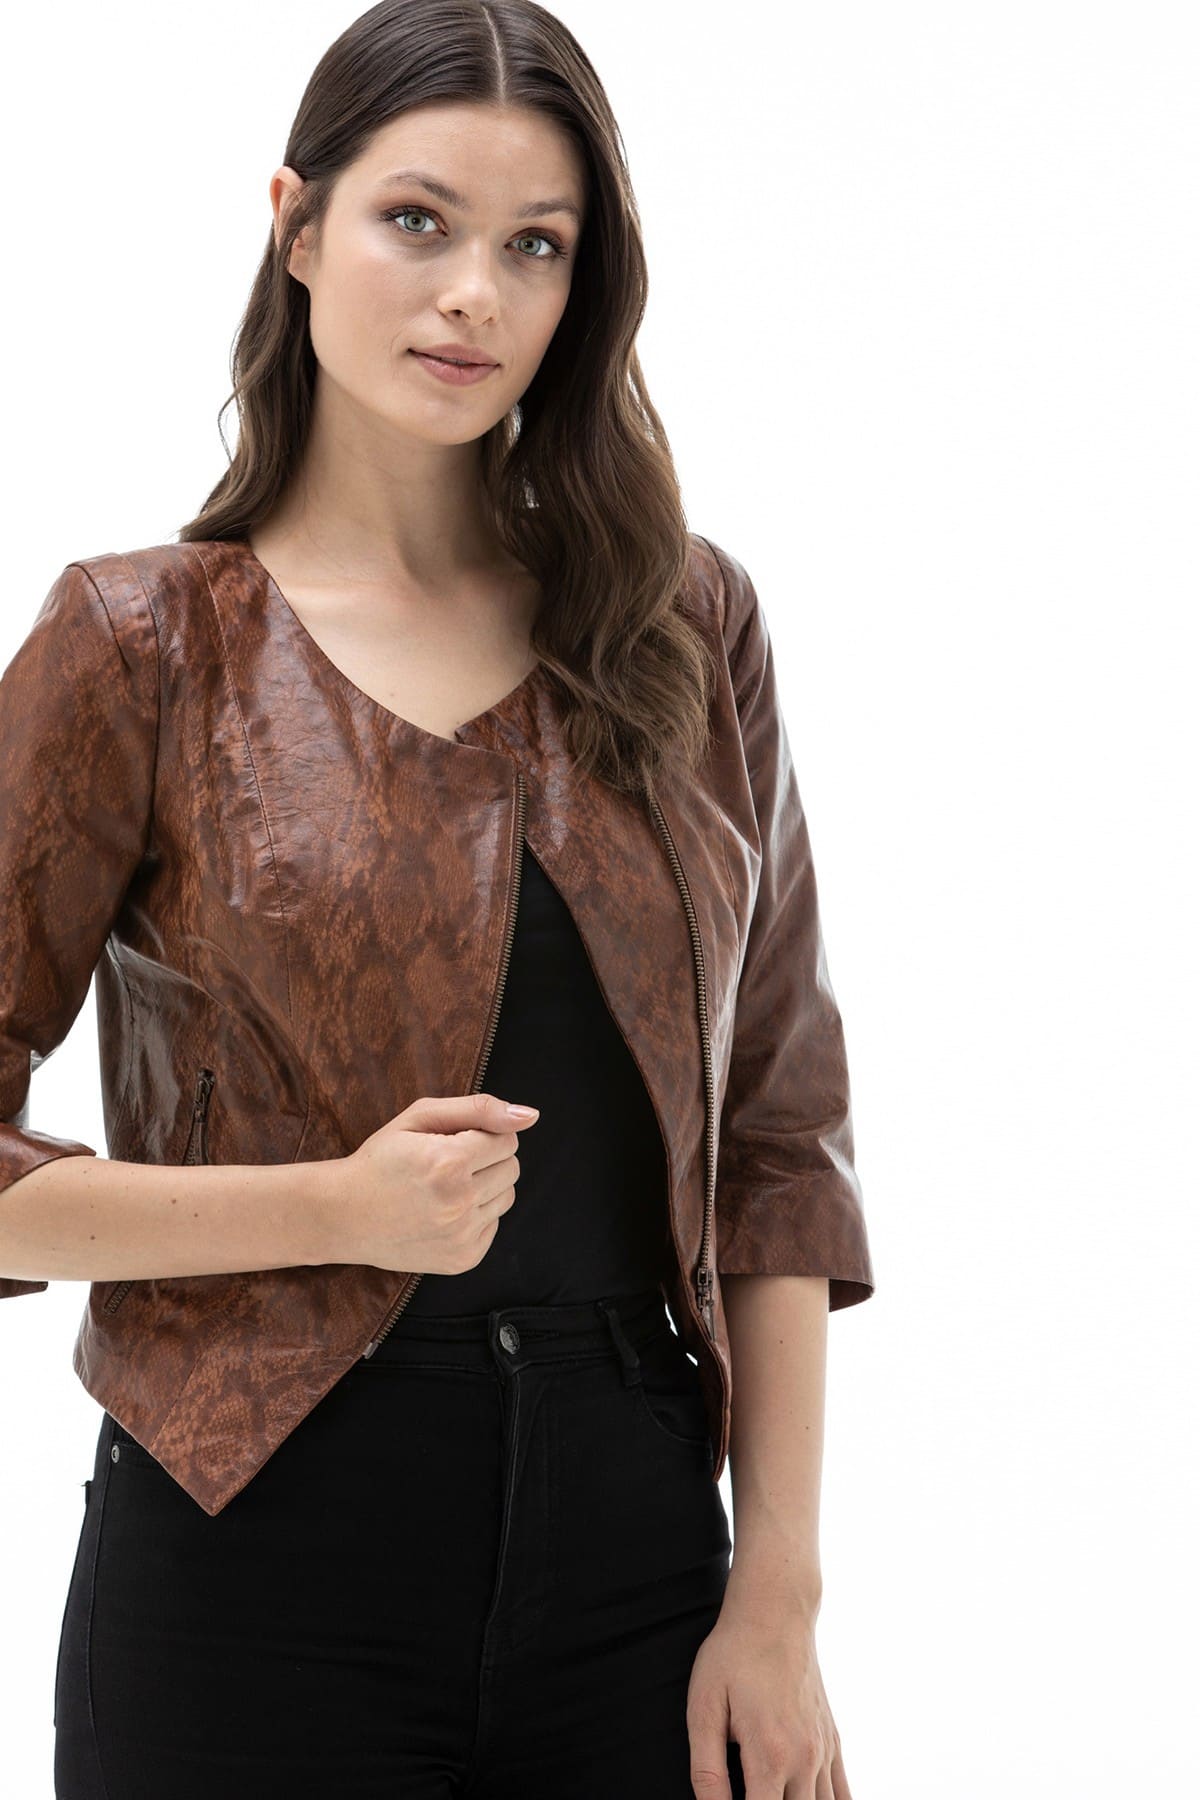 Loewe Brown Leather Jacket